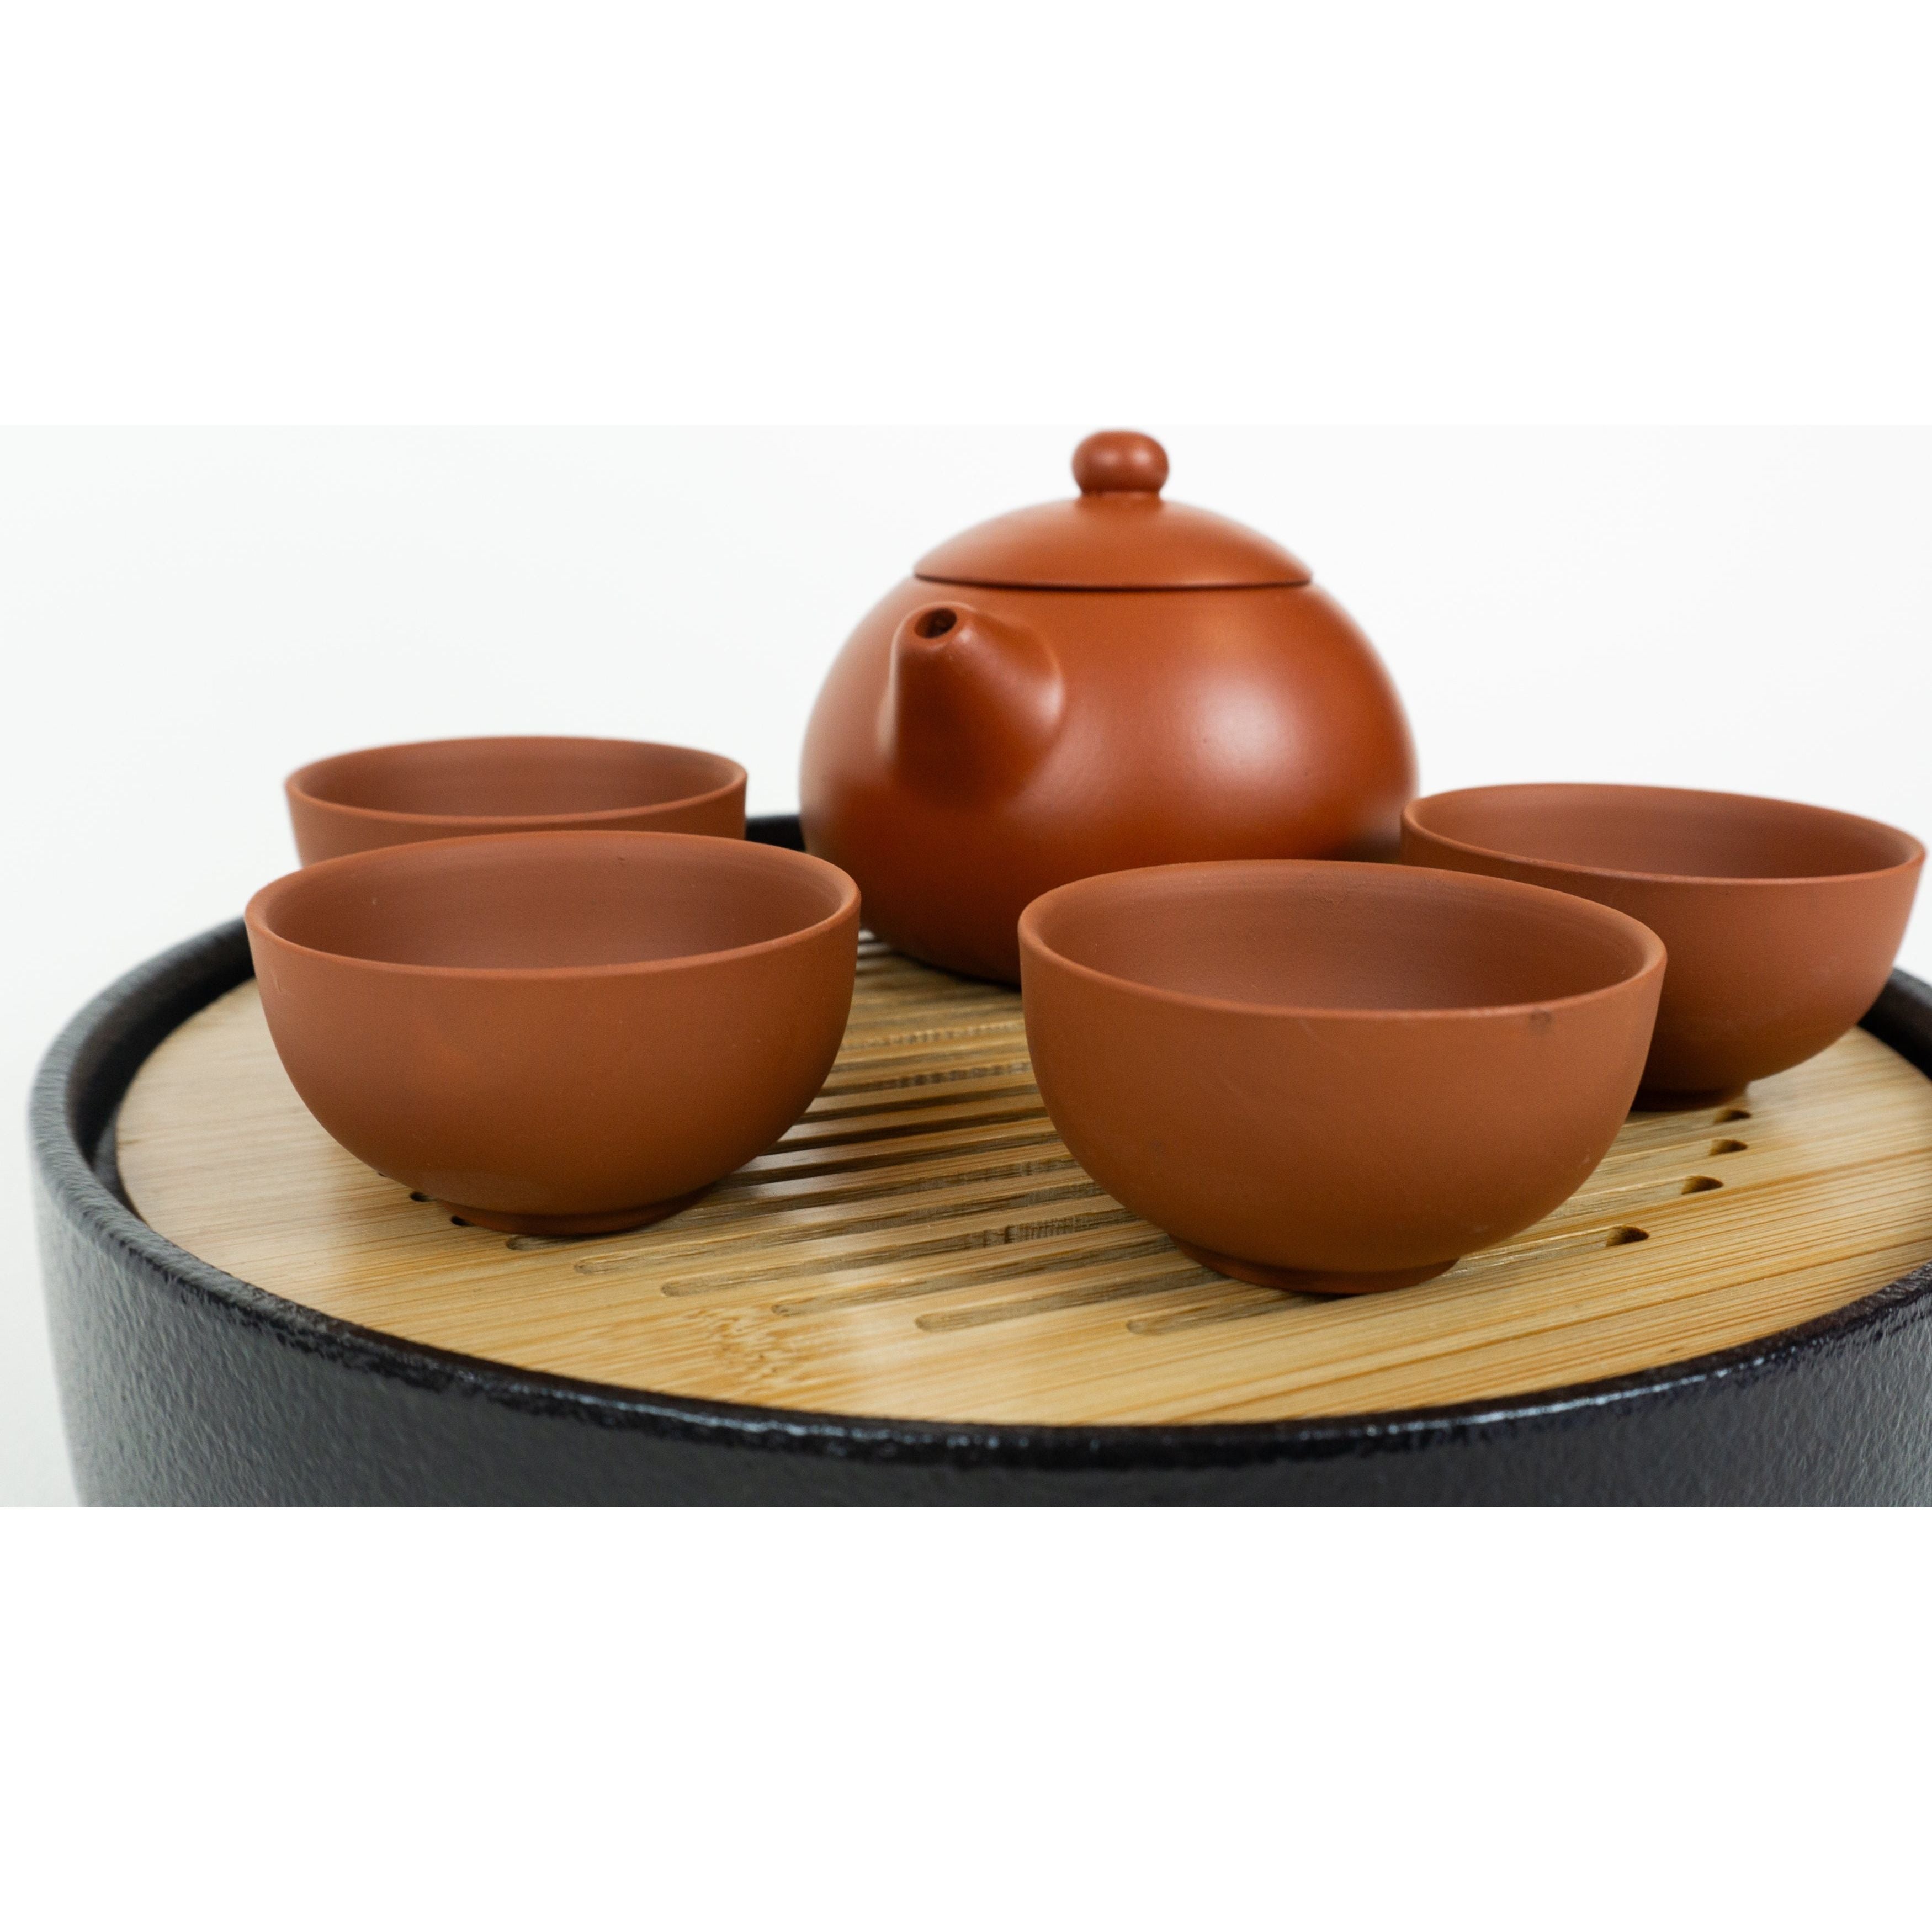 Ensemble de cérémonie du thé, couvercle de théière en forme de dôme brun rougeâtre Yixing, 4 tasses